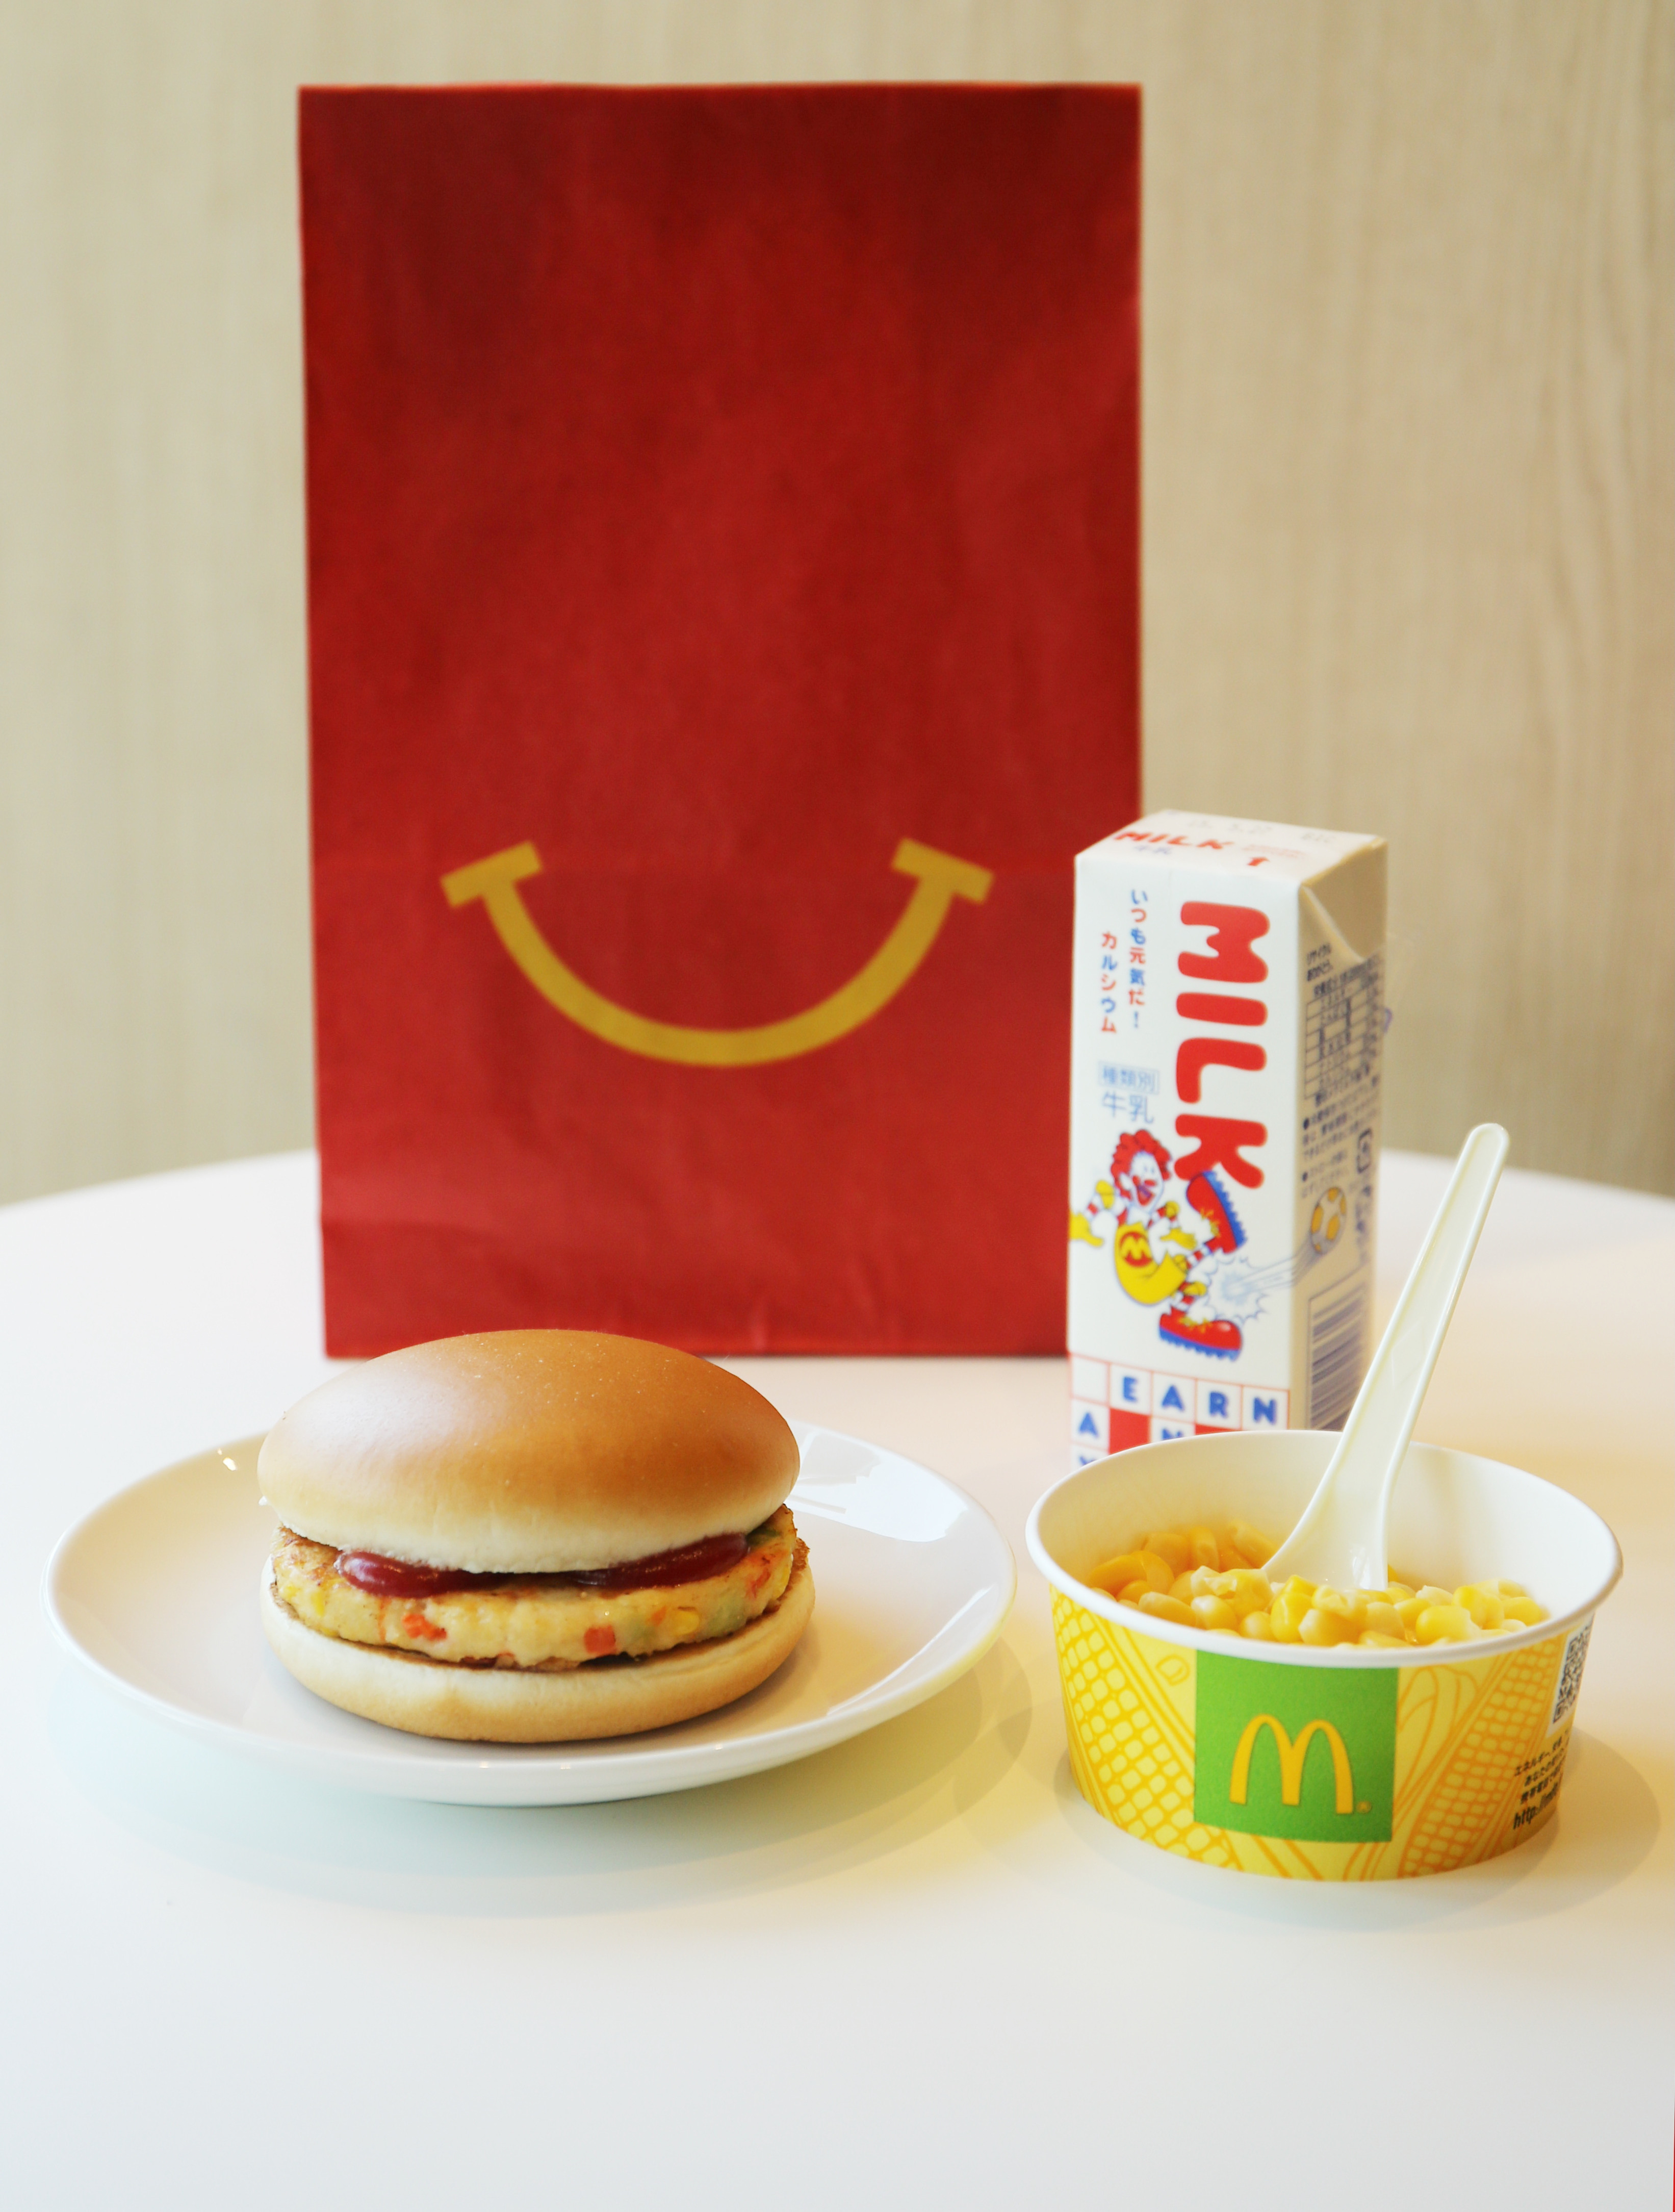 マクドナルドの食事がテーブルに置かれています。ハンバーガー、コーン、牛乳パックが含まれます。